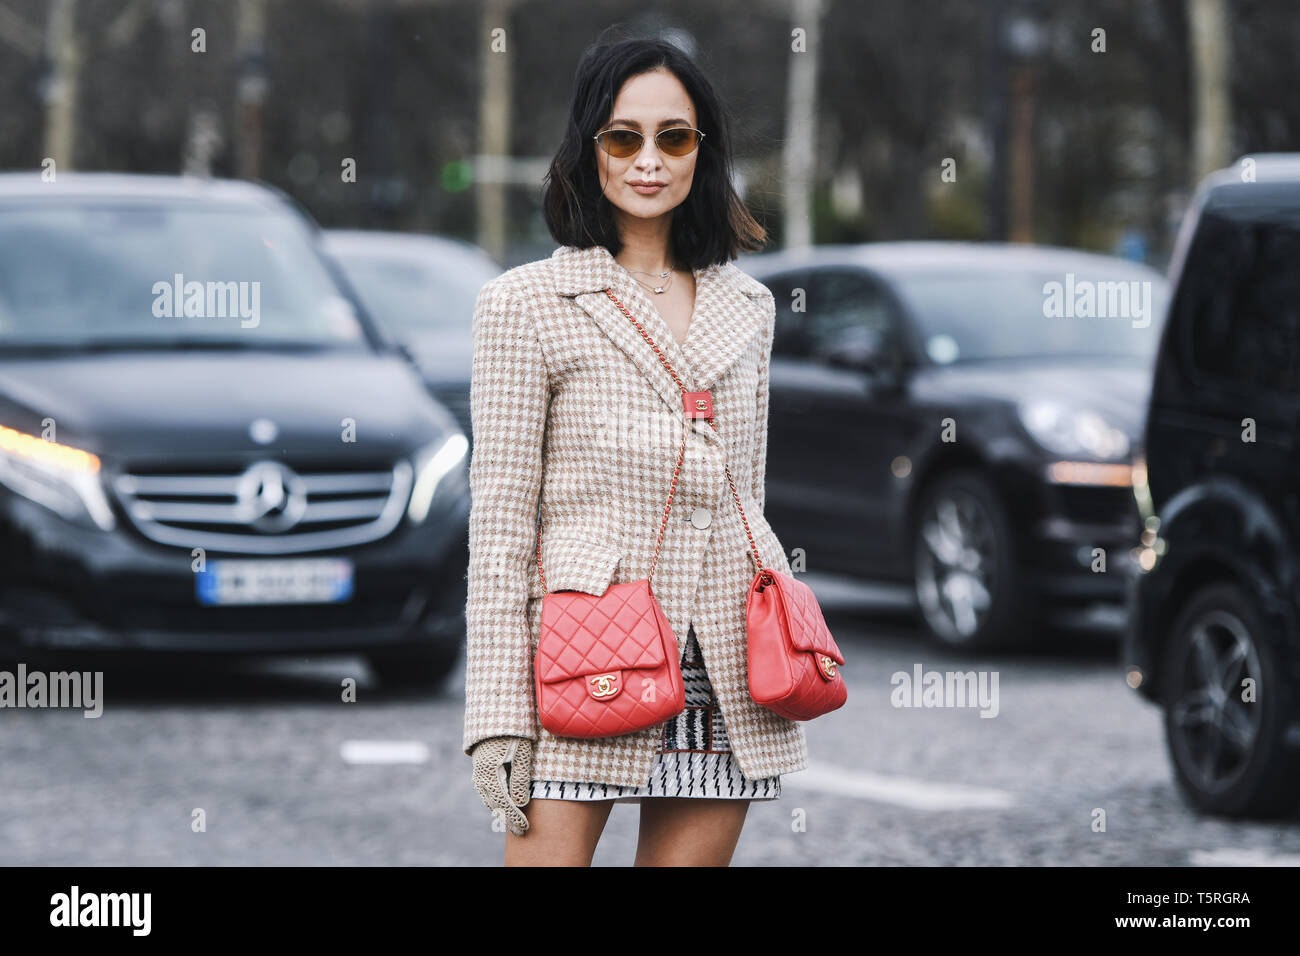 Paris, France - le 5 mars 2019 : Street style - Femme portant veste Blazer rouge double, sacs Chanel avant un défilé de mode pendant la Fashion Week de Paris - PF Banque D'Images